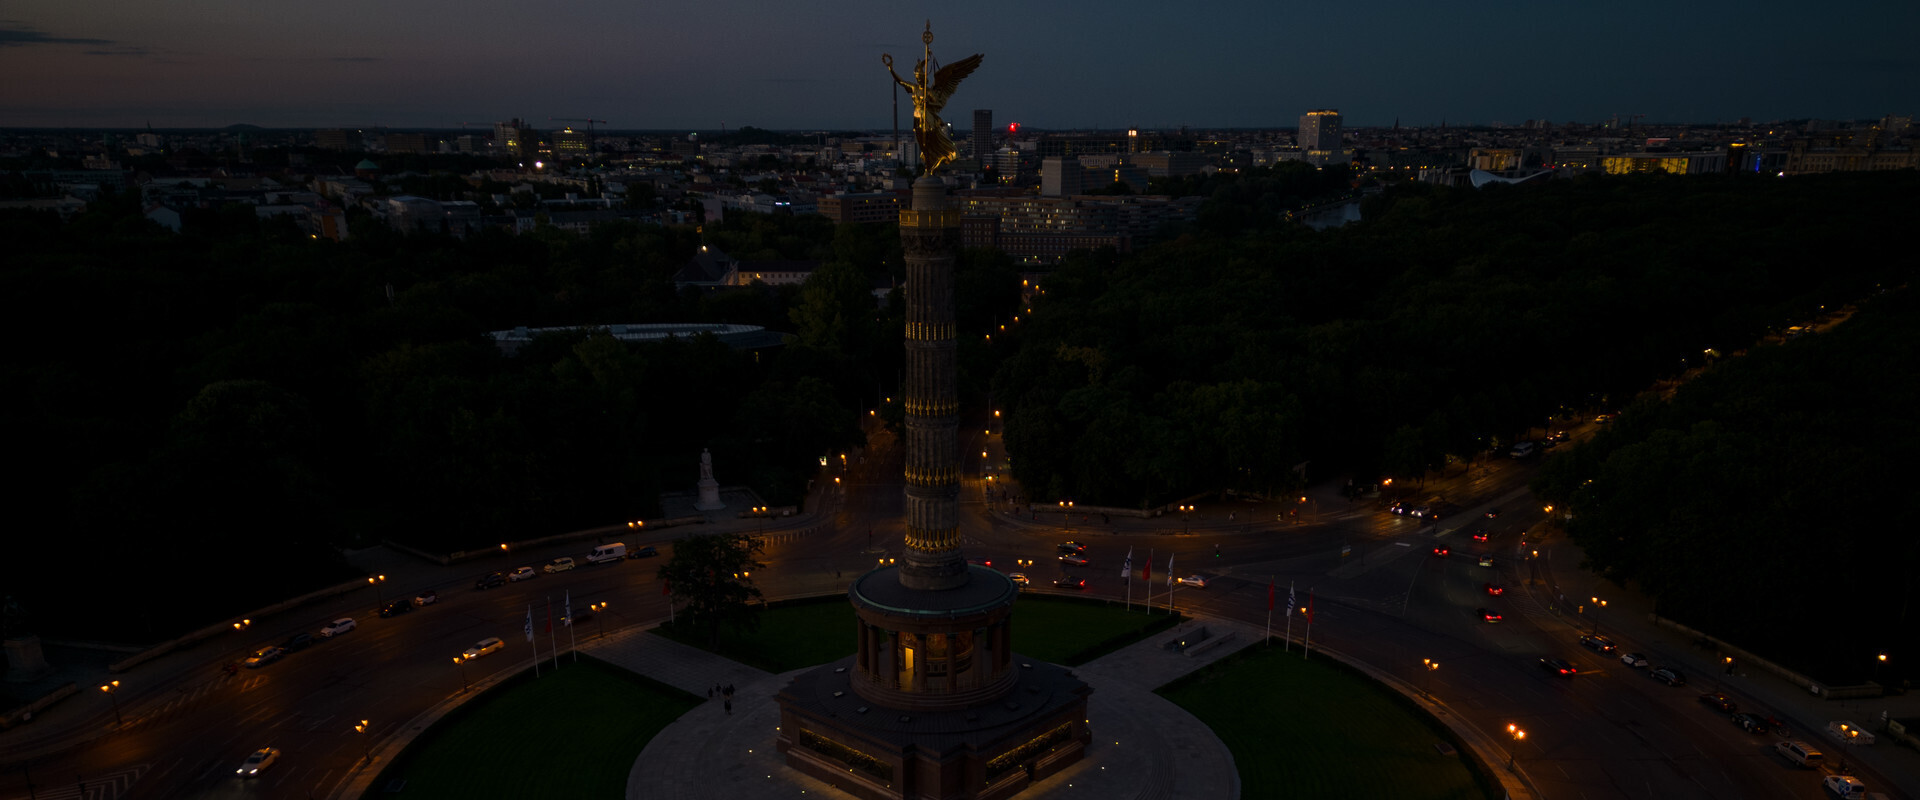 עמוד הניצחון של ברלין מוחשך בעקבות תקנות חיסכון באנרגיה (צילום: Christian Ender, Getty Images)